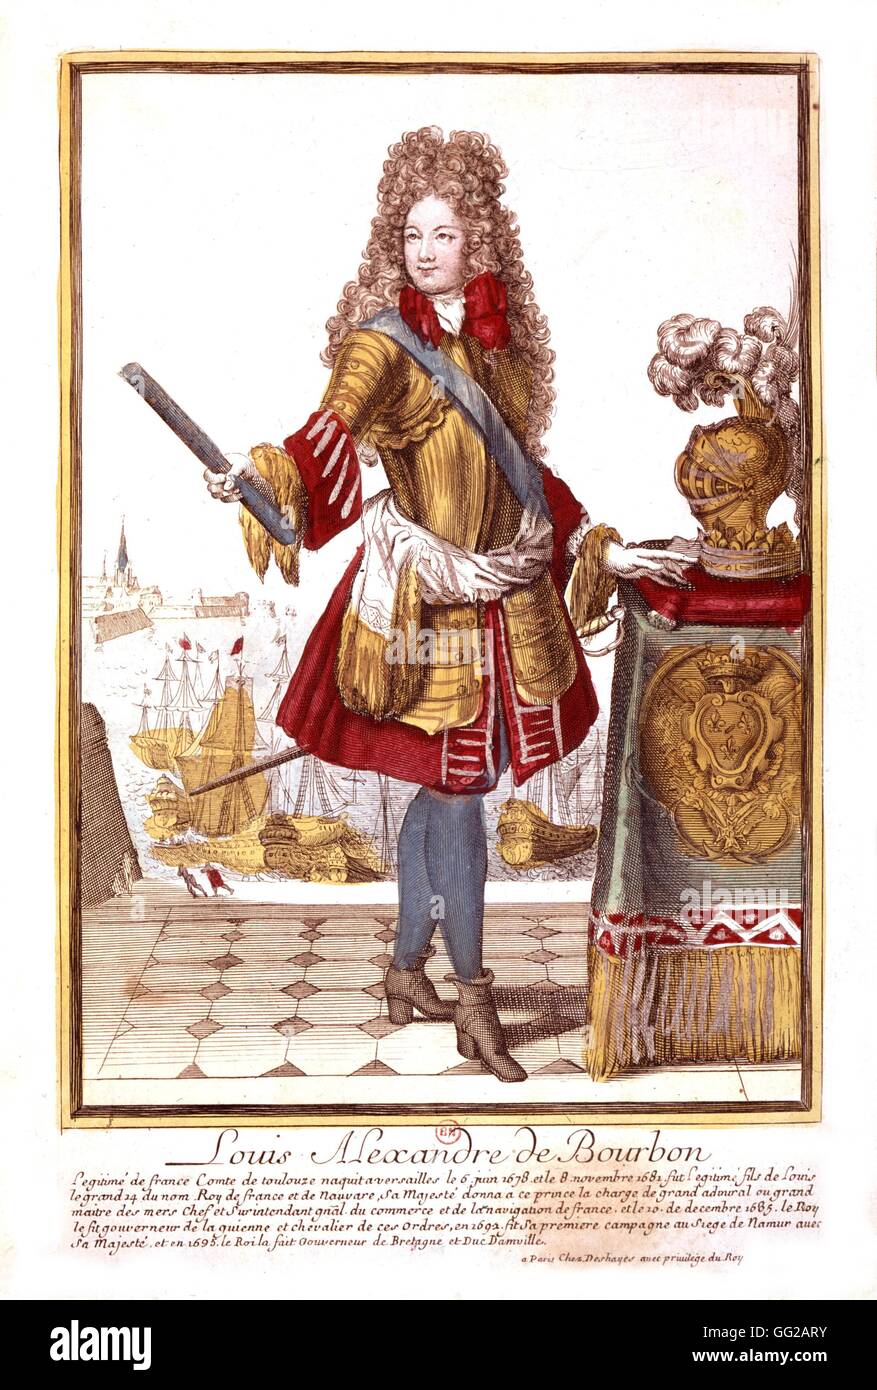 Louis Alexandre de Bourbon (geboren im Jahre 1678), ein Sohn von Louis XIV des 17. Jahrhunderts Frankreich Stockfoto